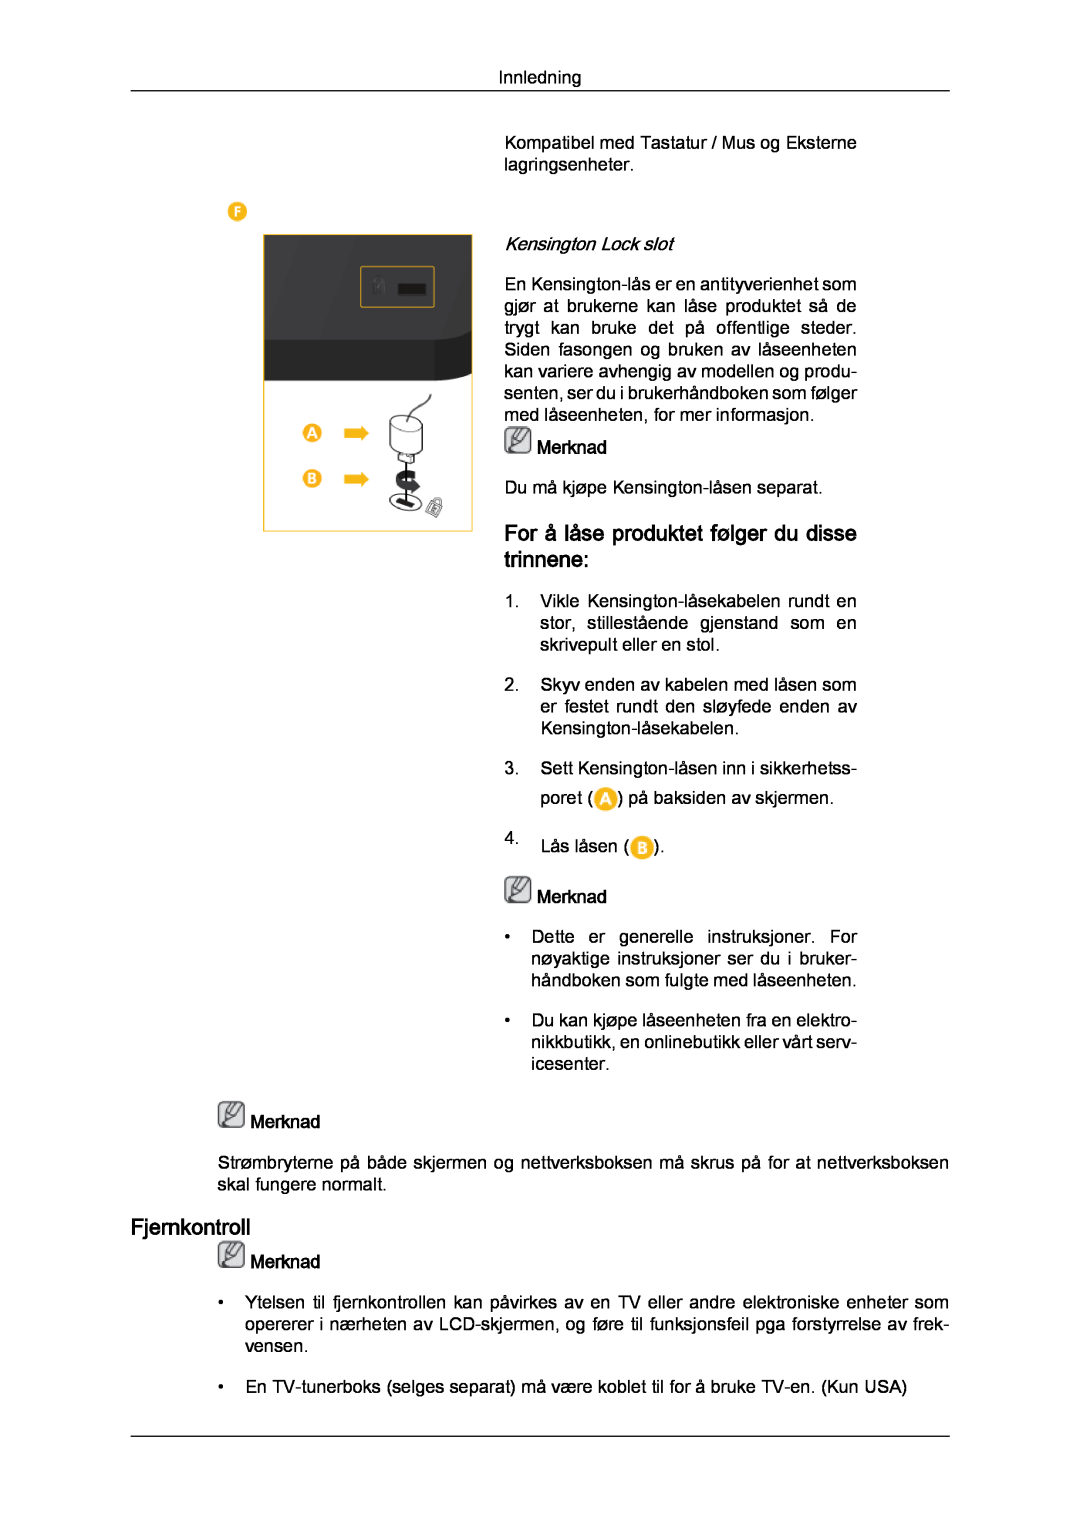 Samsung LH32CRSMBD/EN manual For å låse produktet følger du disse trinnene, Fjernkontroll, Kensington Lock slot, Merknad 